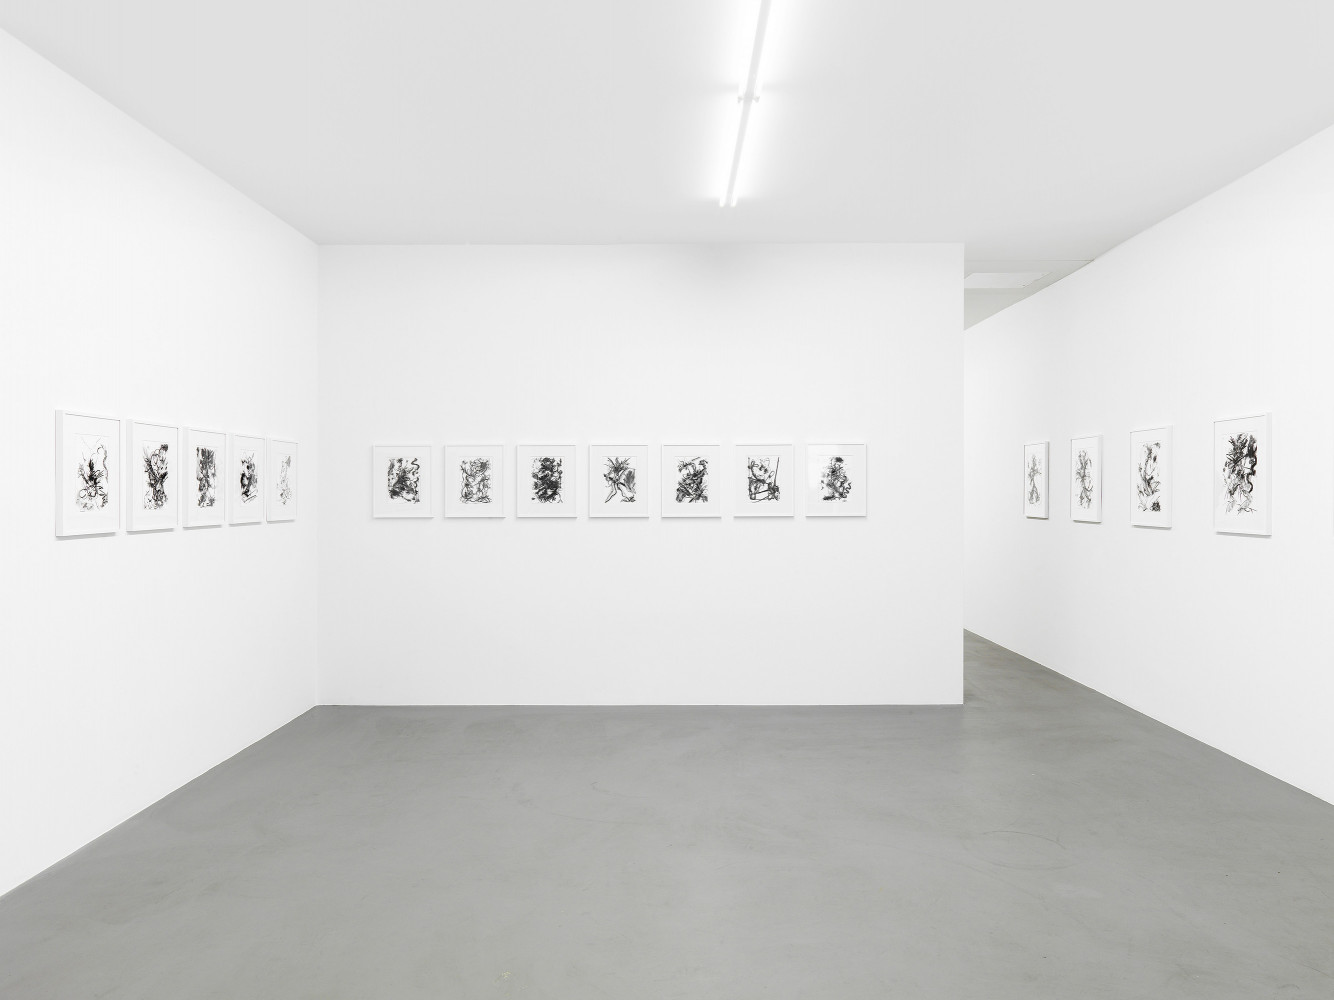 Fiona Rae, ‘Zeichnungen’, Installation view, Buchmann Box, 2014